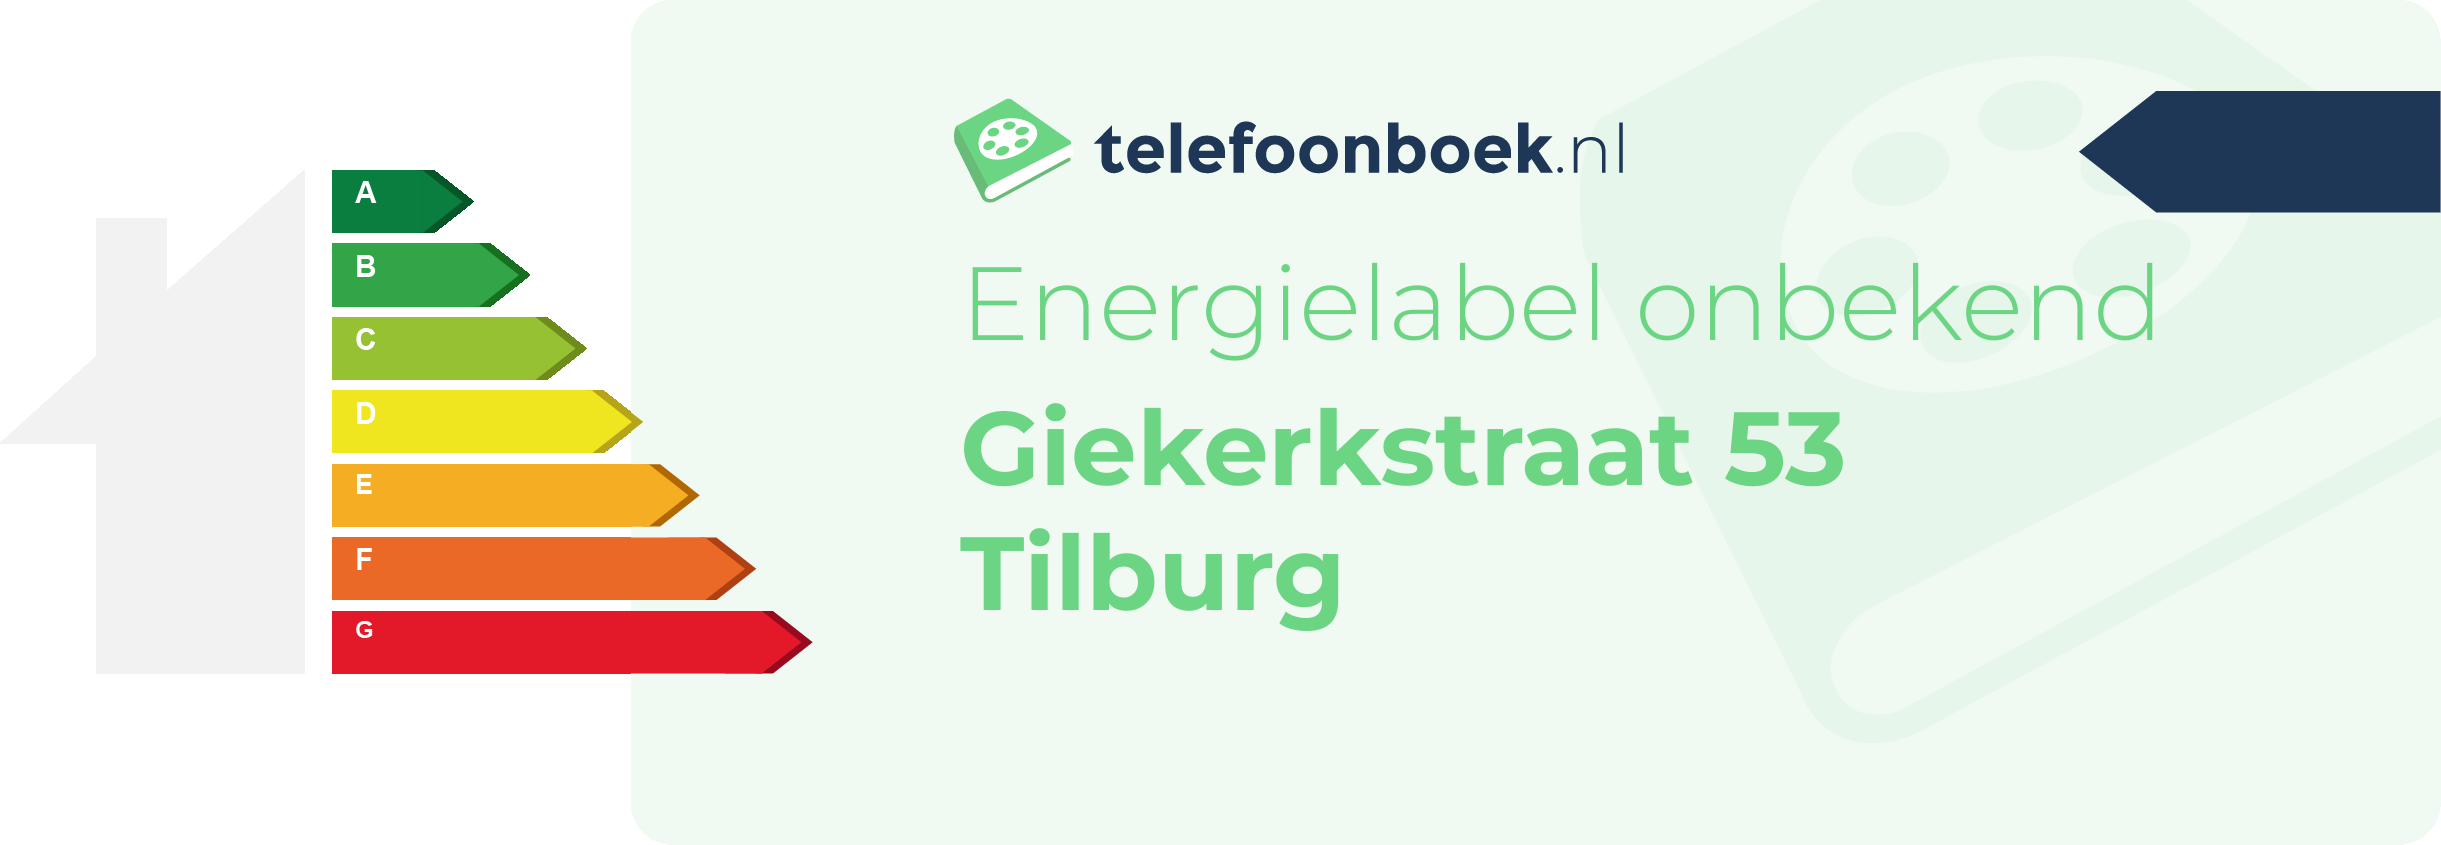 Energielabel Giekerkstraat 53 Tilburg